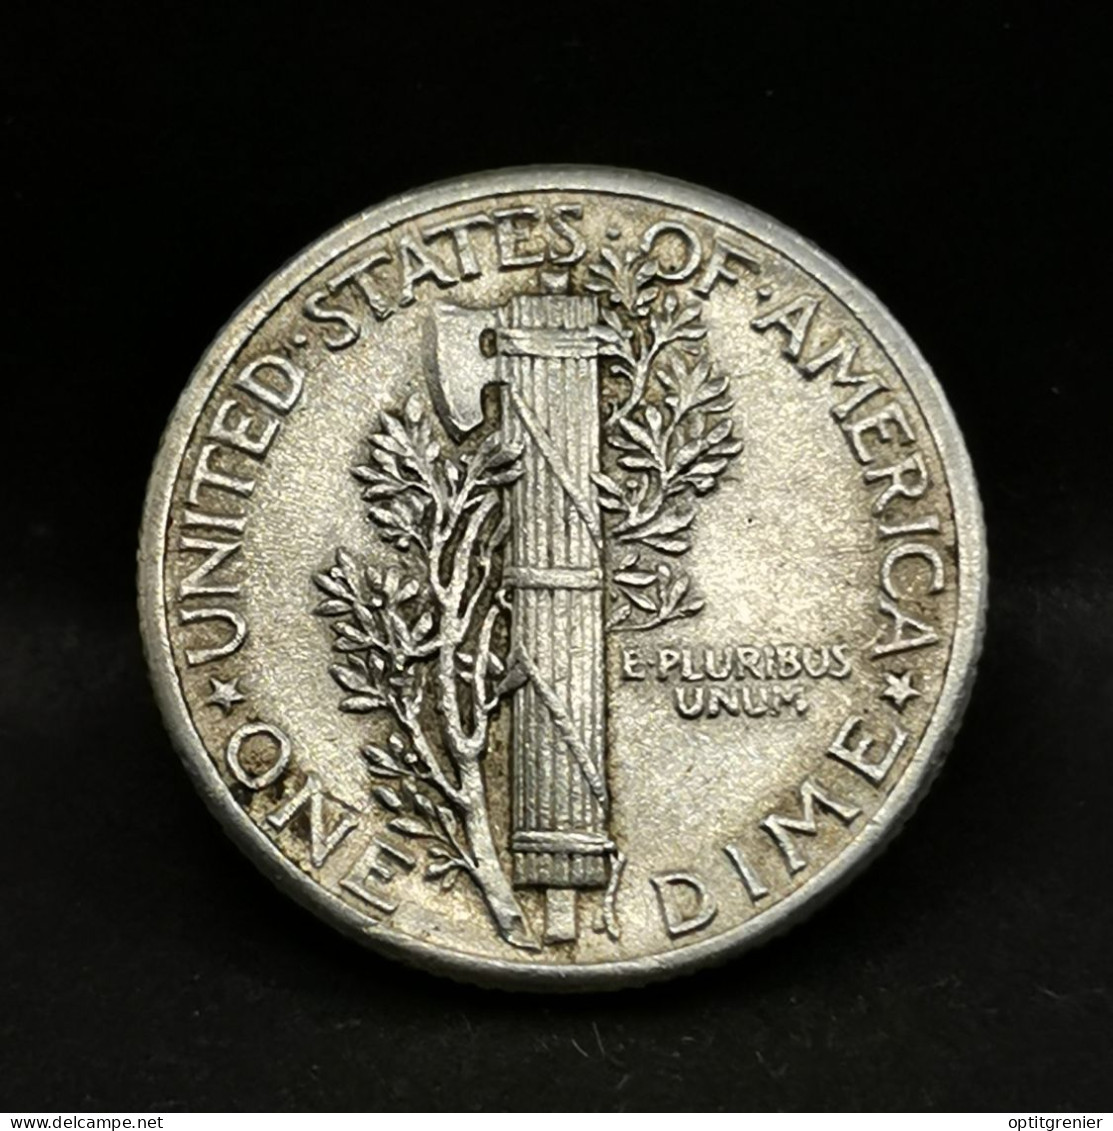 1 MERCURY DIME 10 CENTS ARGENT 1940 PHILADELPHIE USA / SILVER - 1916-1945: Mercury (Mercure)